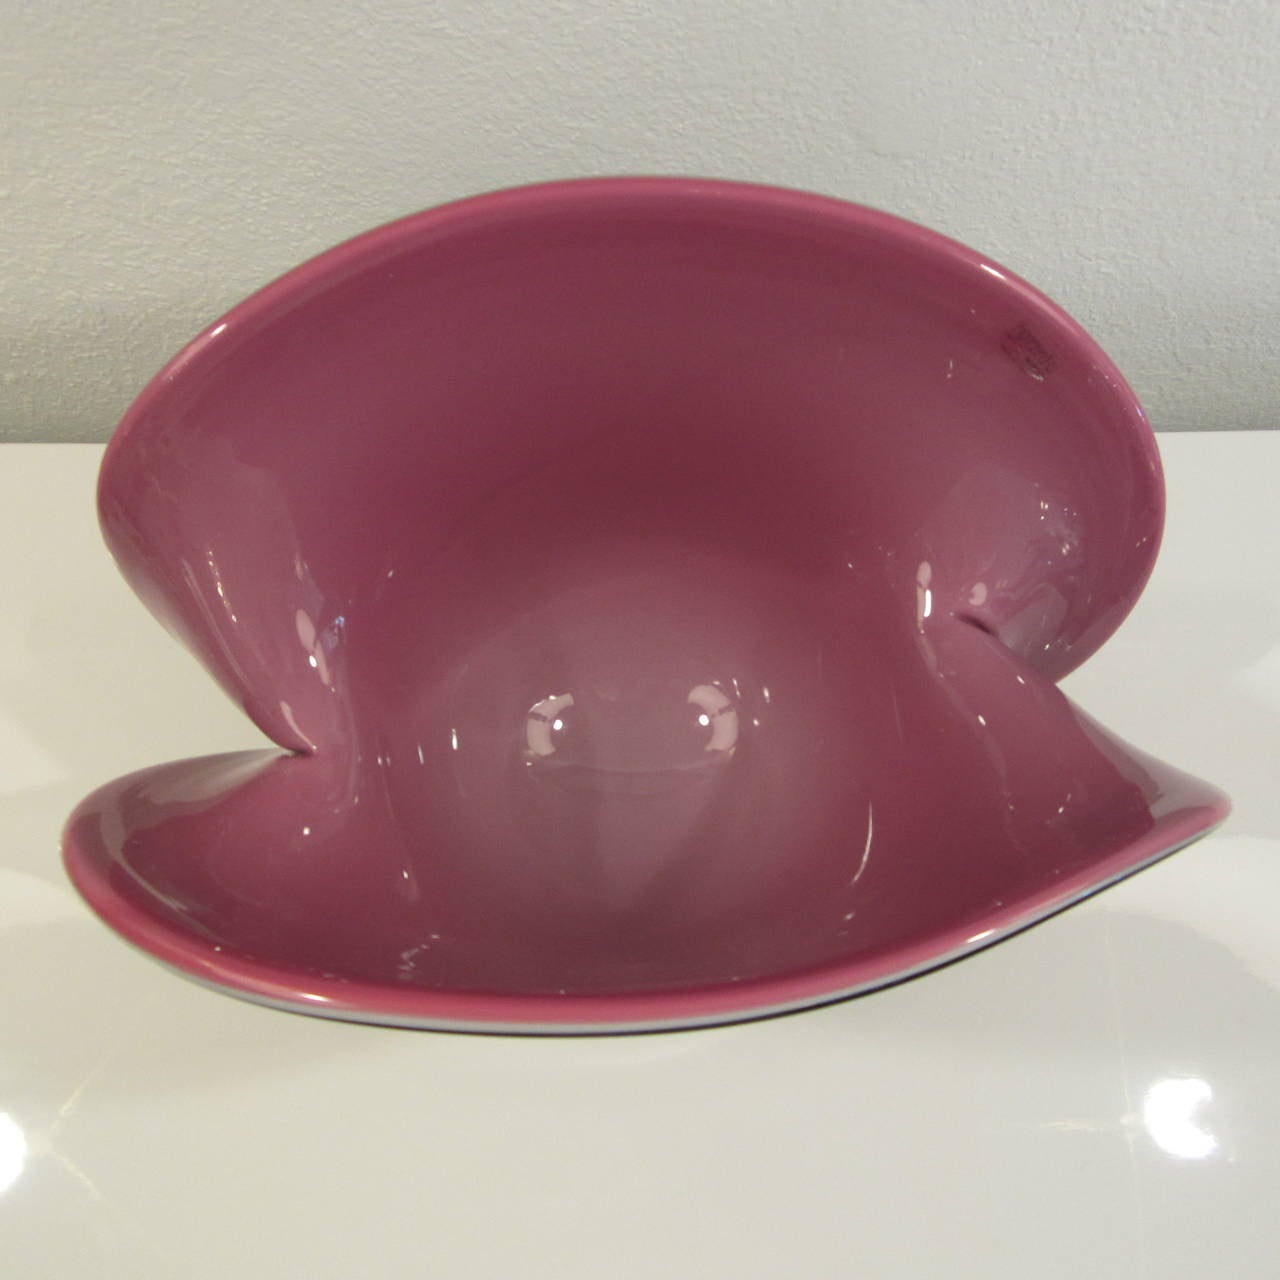 Blown Glass Formia Vetri Di Murano Large Handblown Glass Centerpiece Shell Bowl For Sale